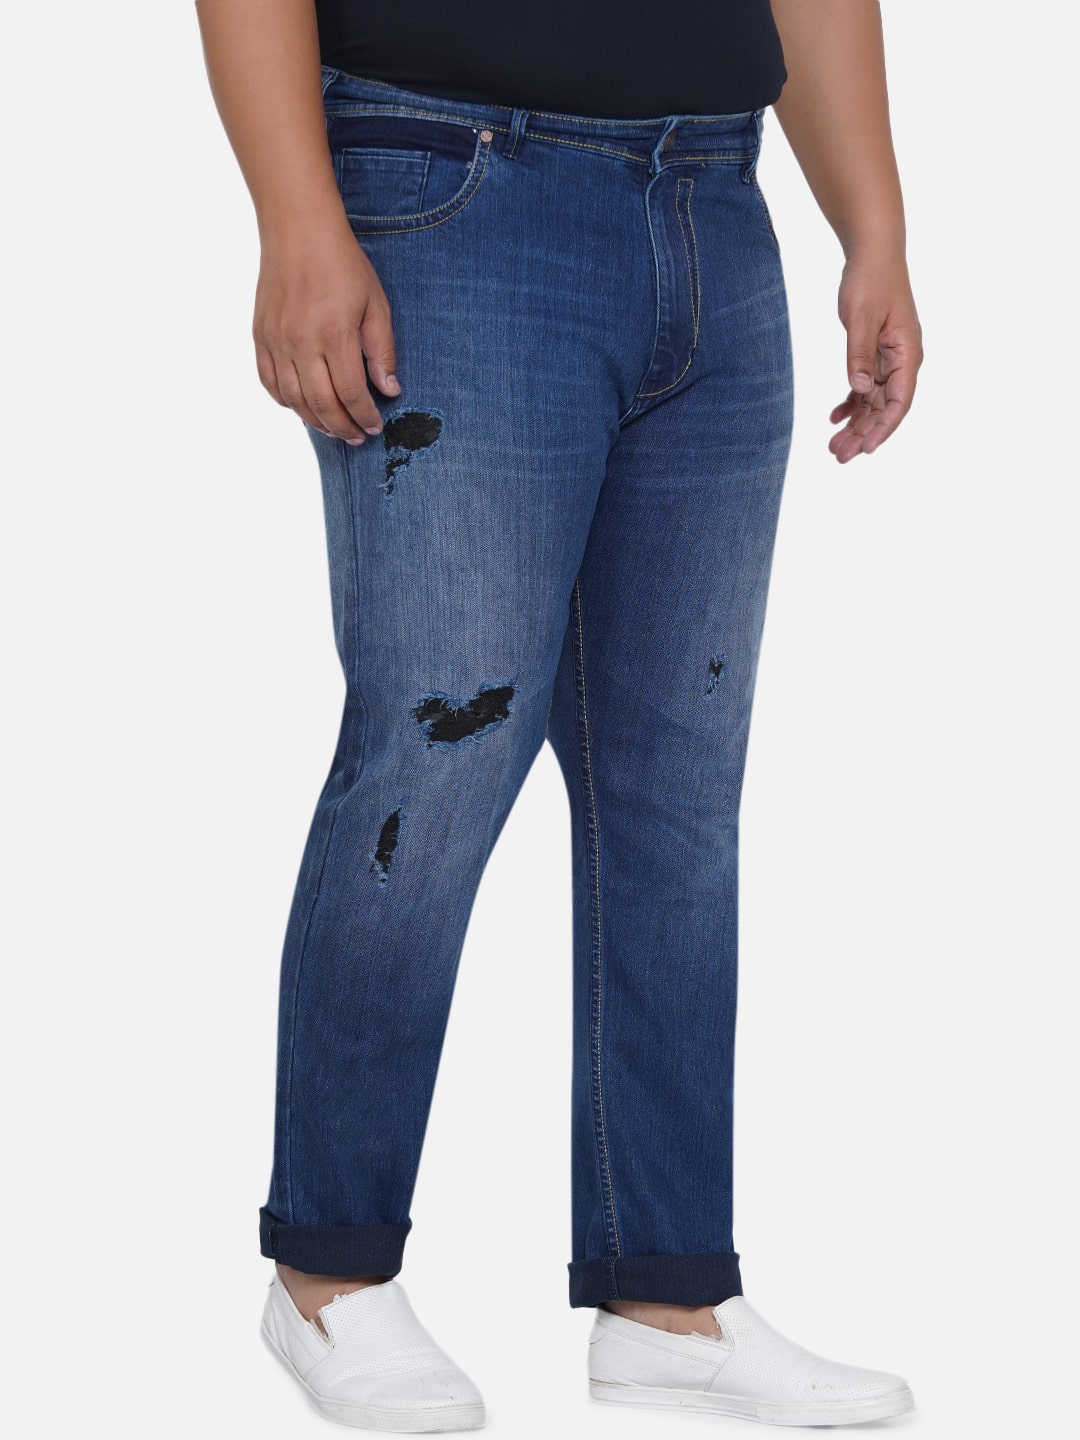 affordables/jeans/EJPJ2050/ejpj2050-4.jpg